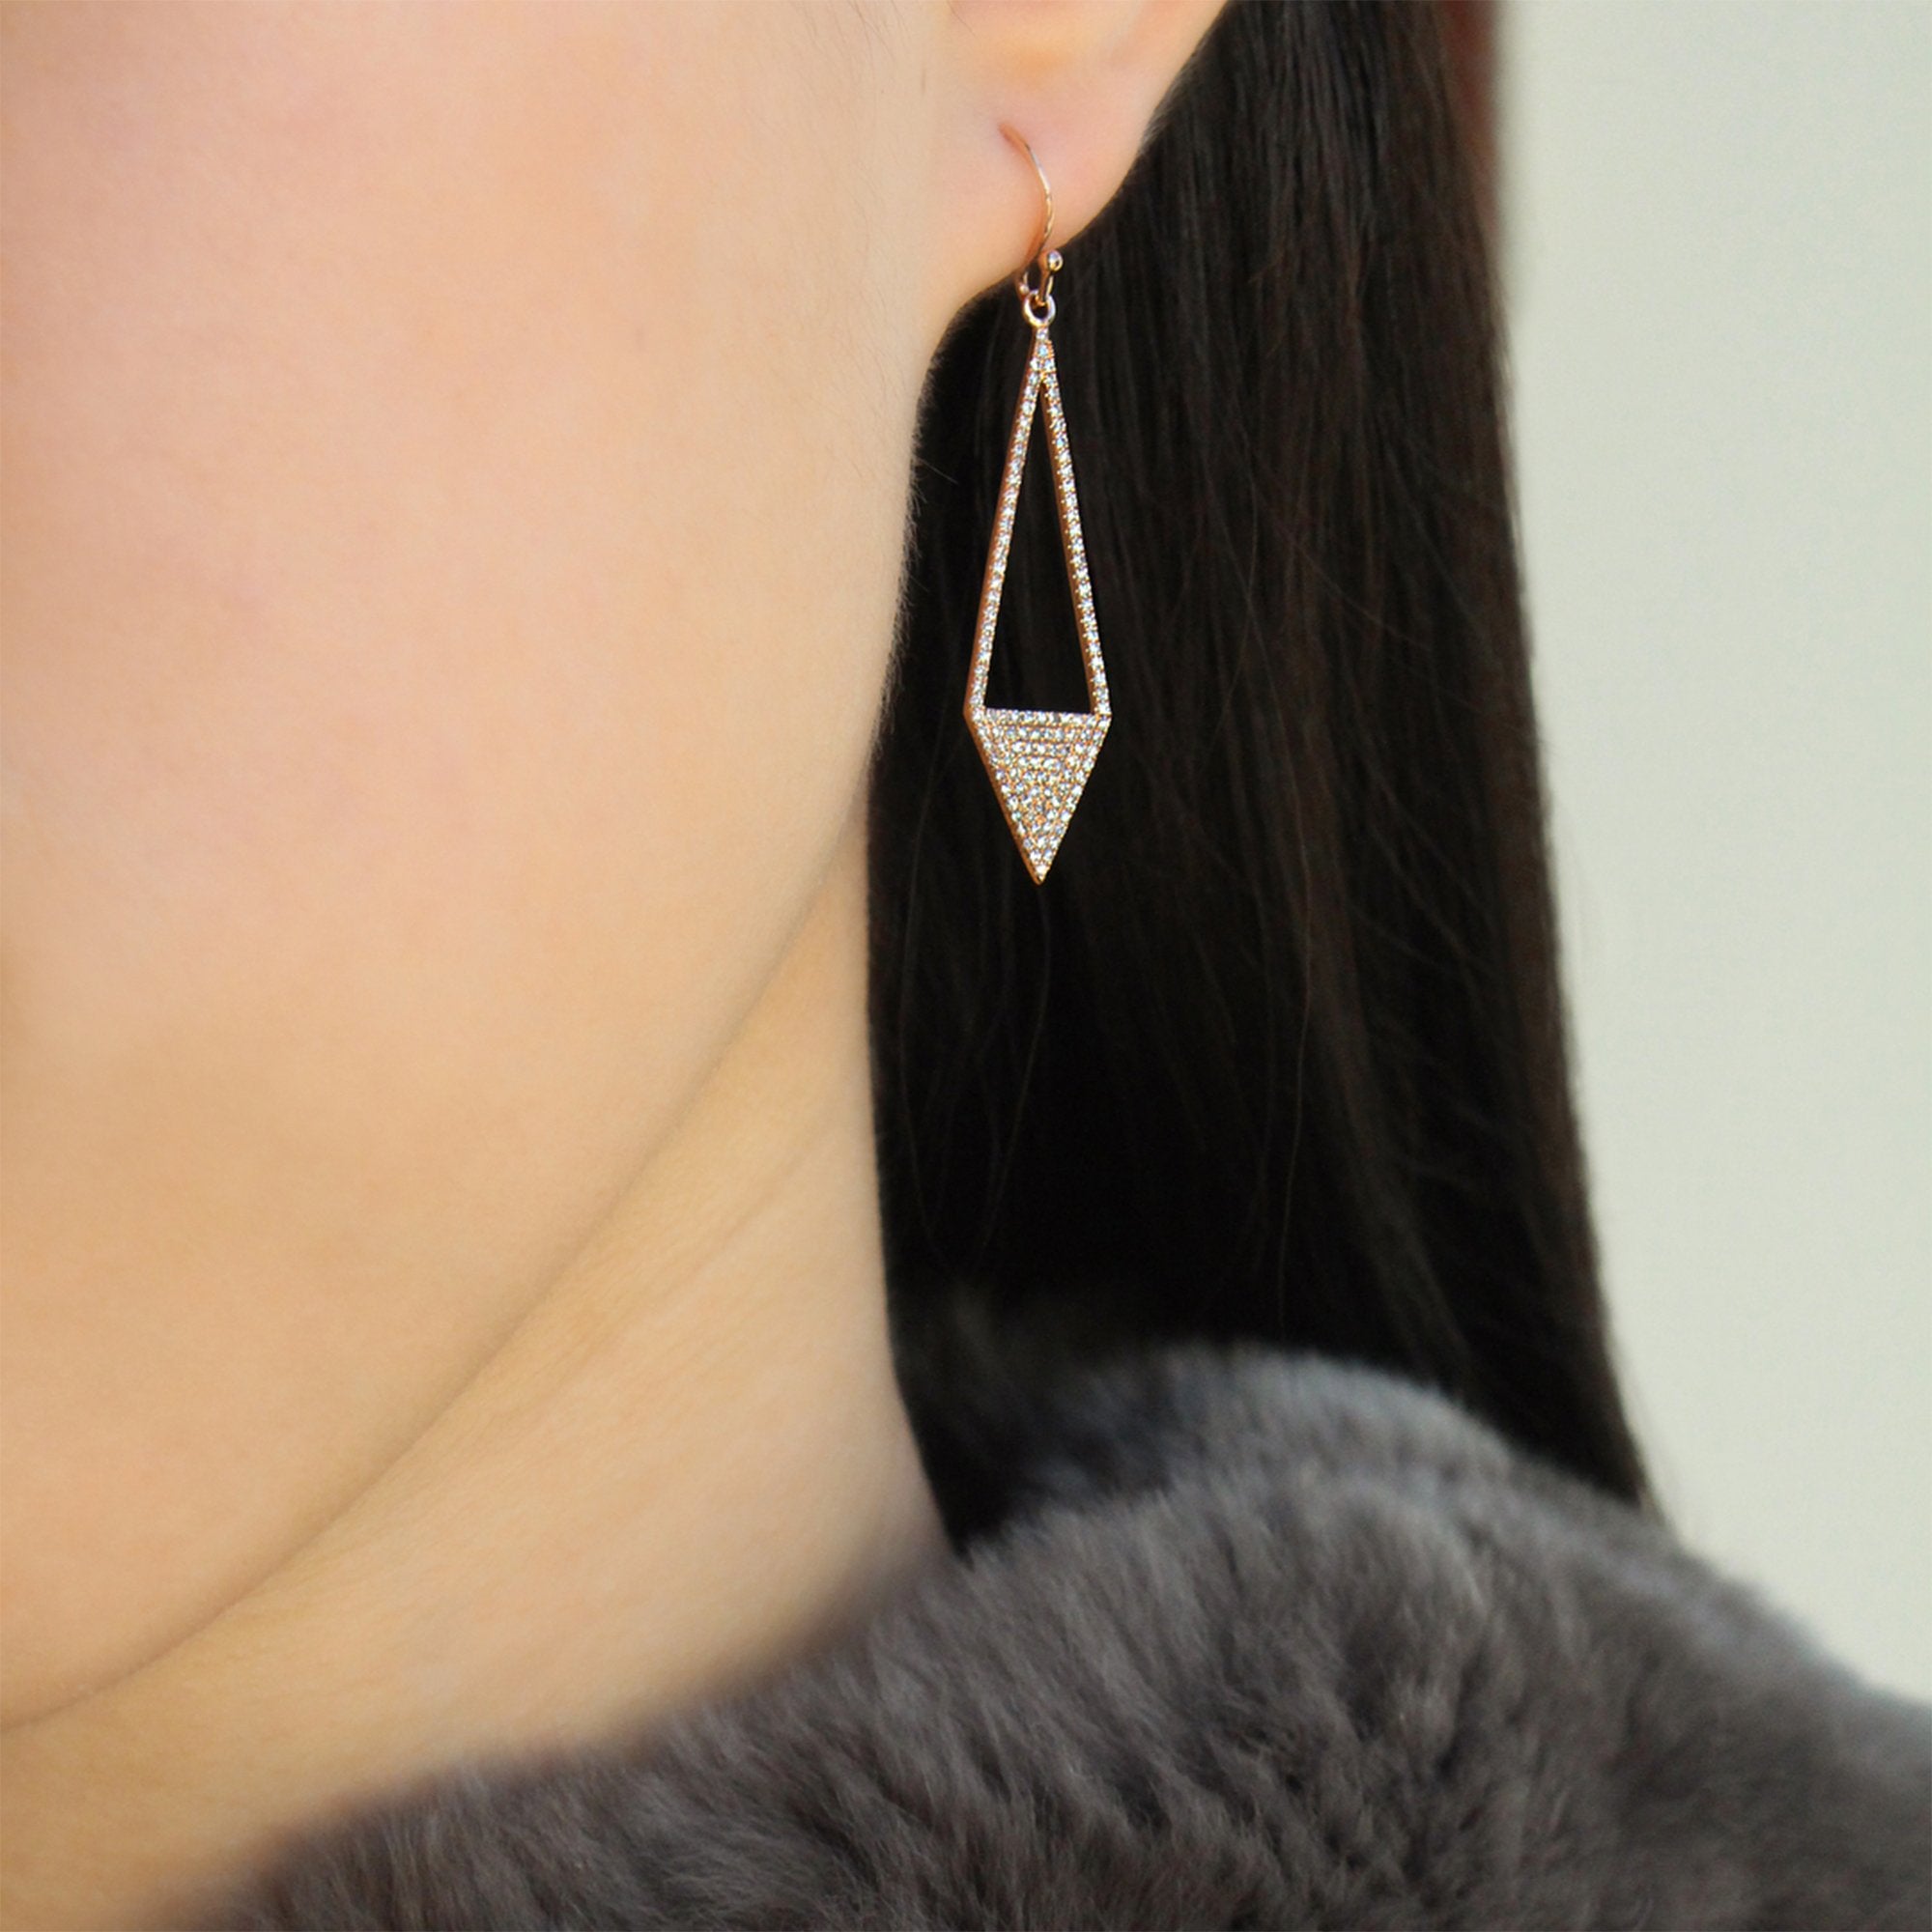 DIAMOND ARROW EARRINGS - Bridget King Jewelry